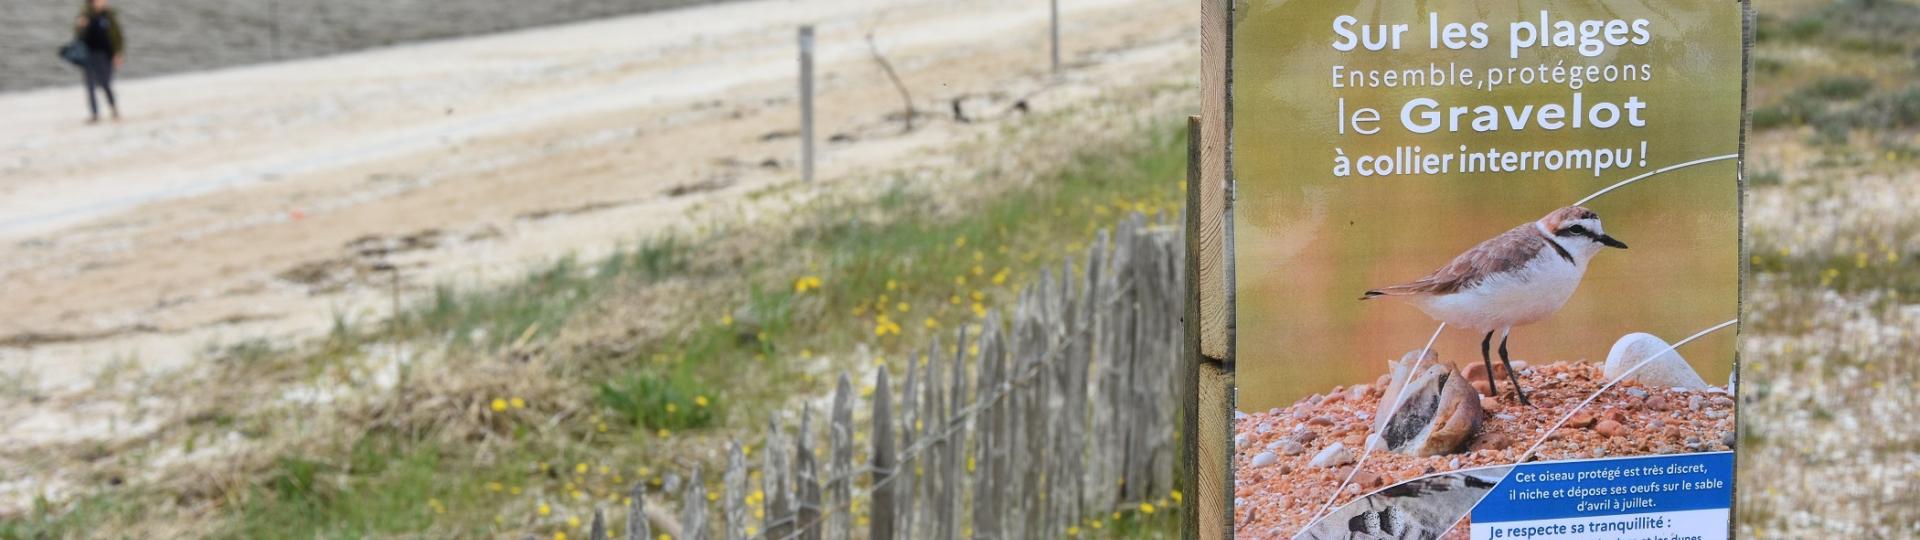 Campagne de préservation du Gravelot à collier interrompu sur les plages